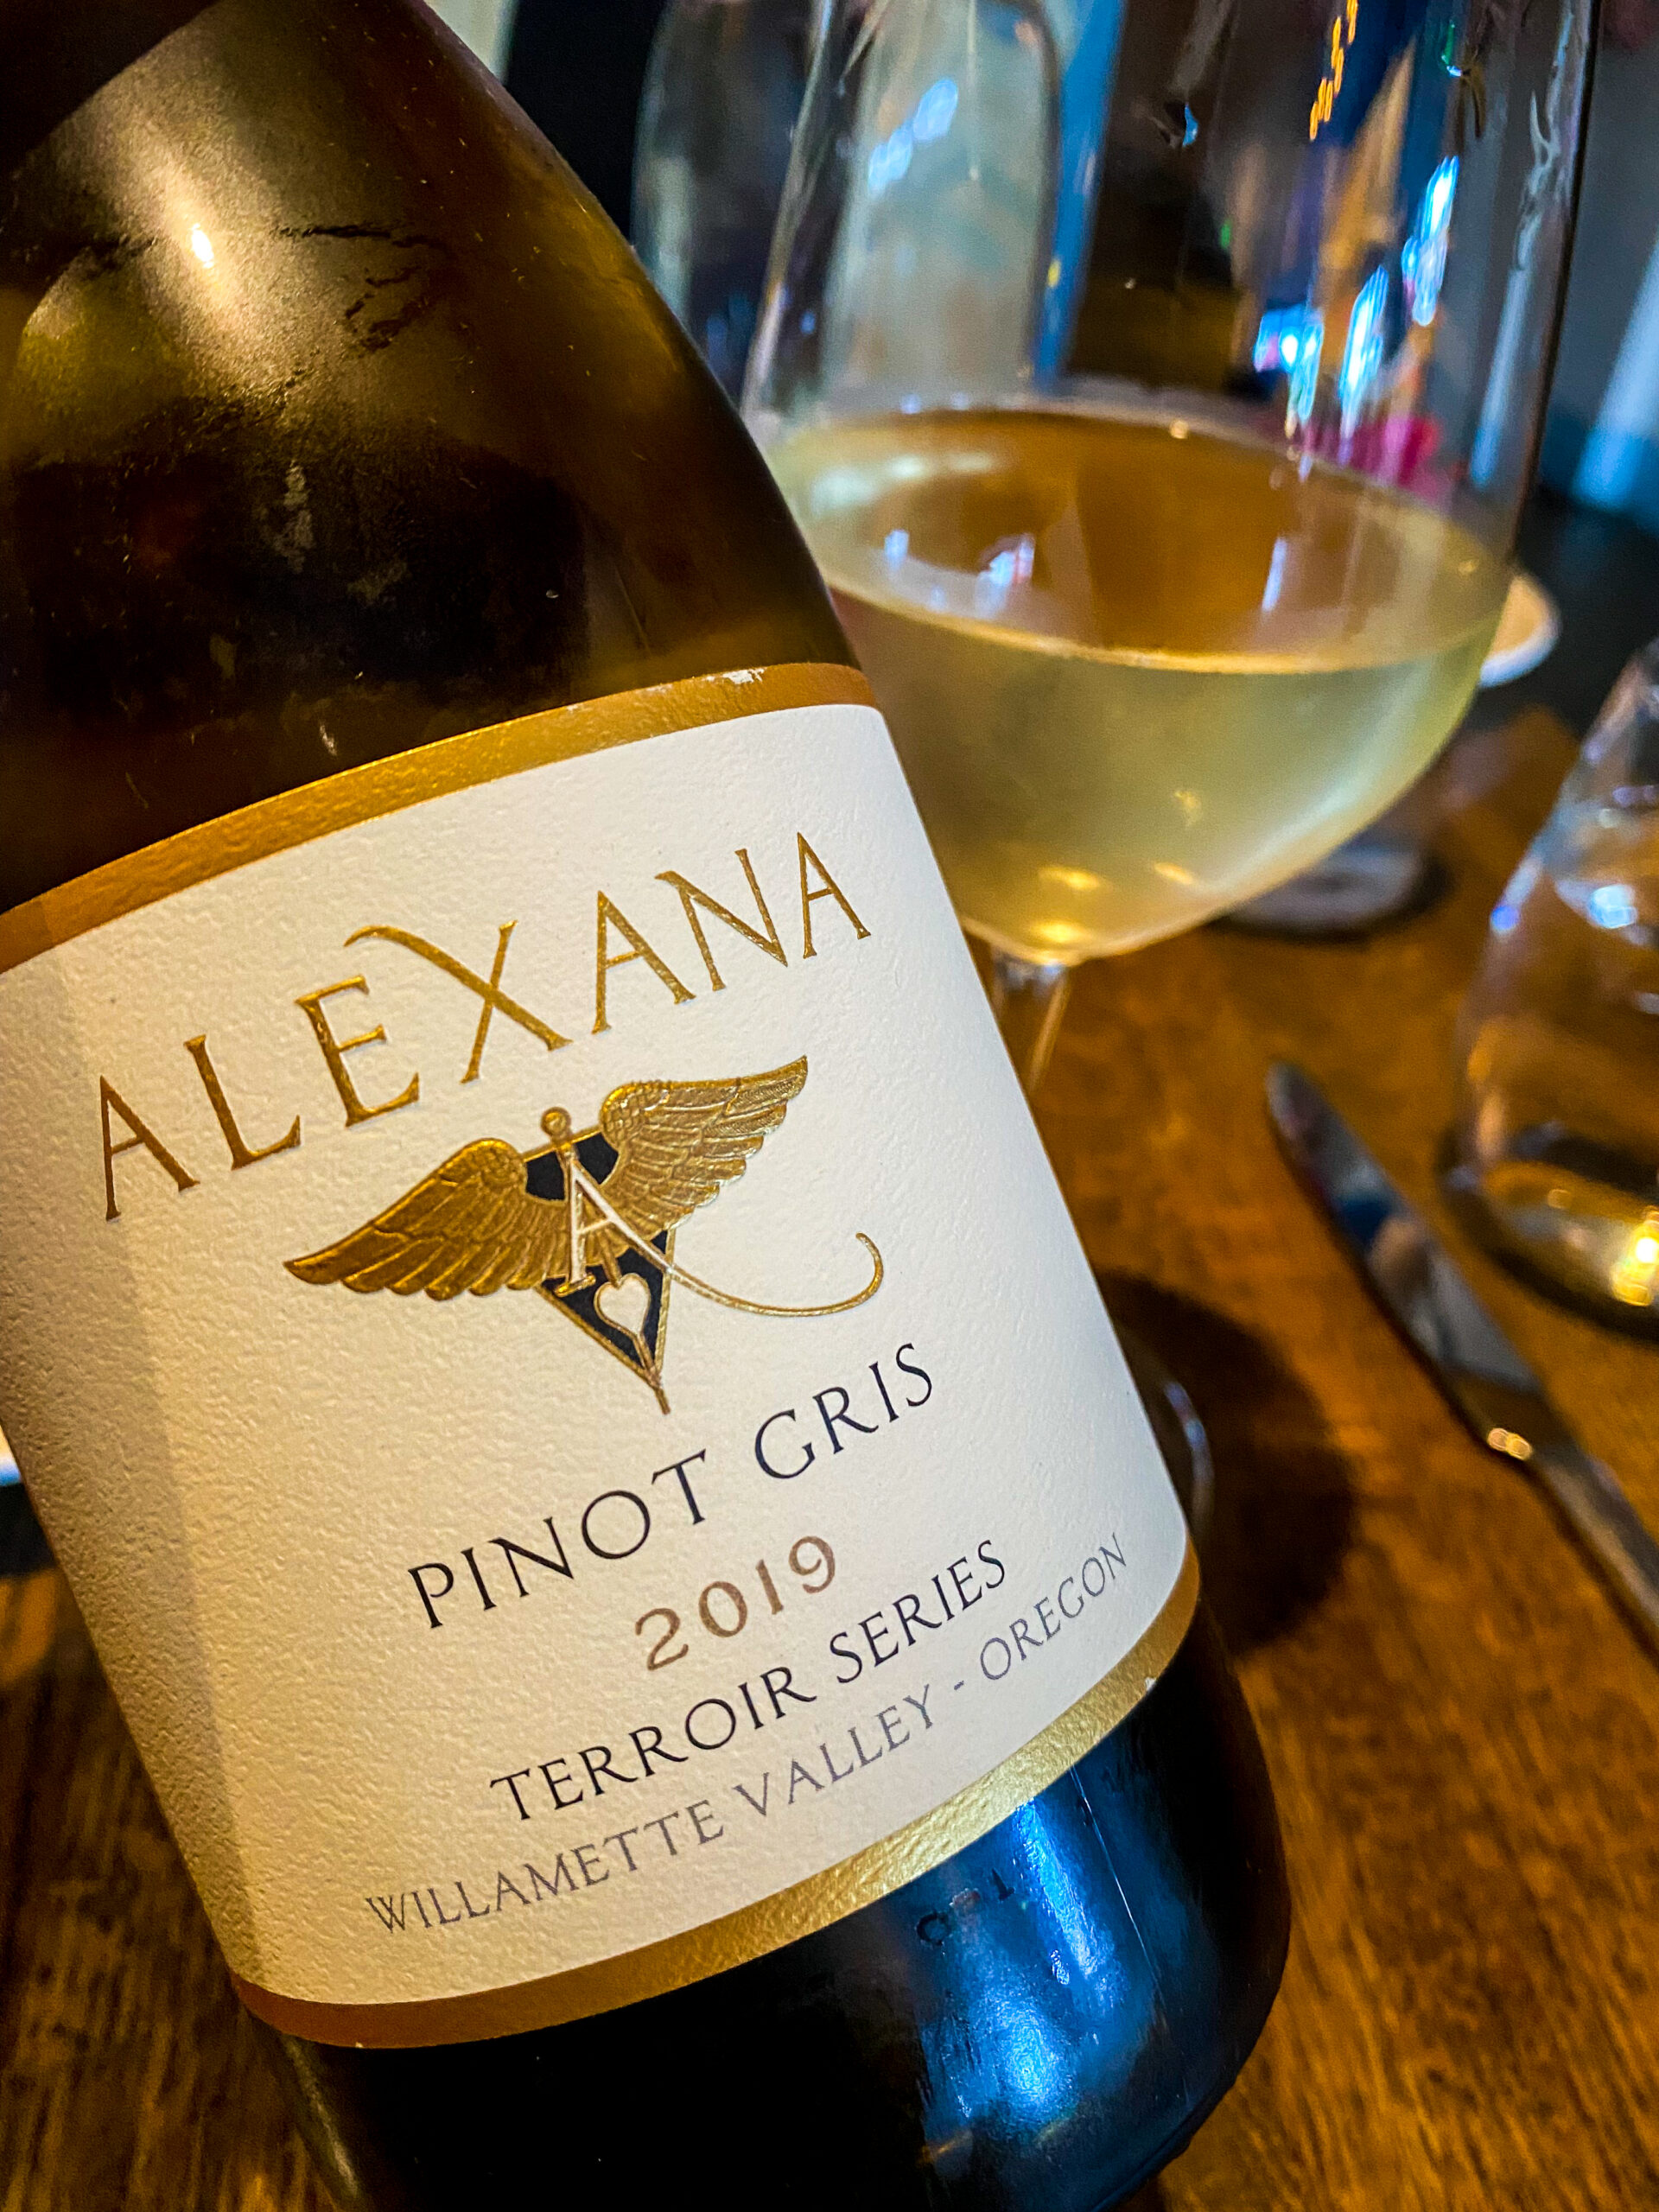 Alexana 2019 Pinot Gris